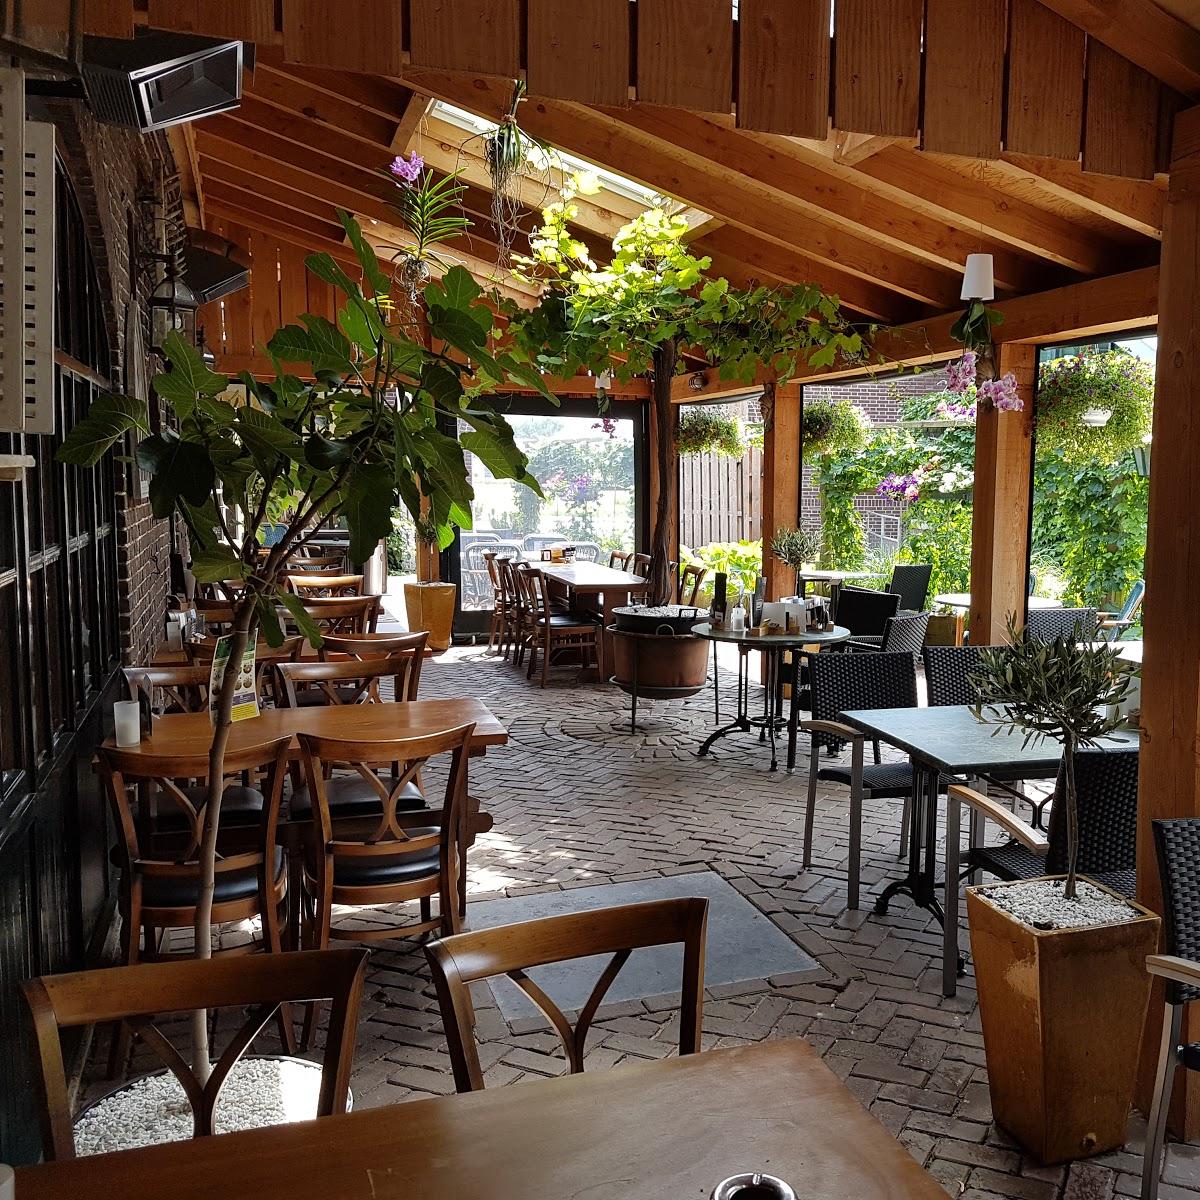 Restaurant "La Rondine" in Horst